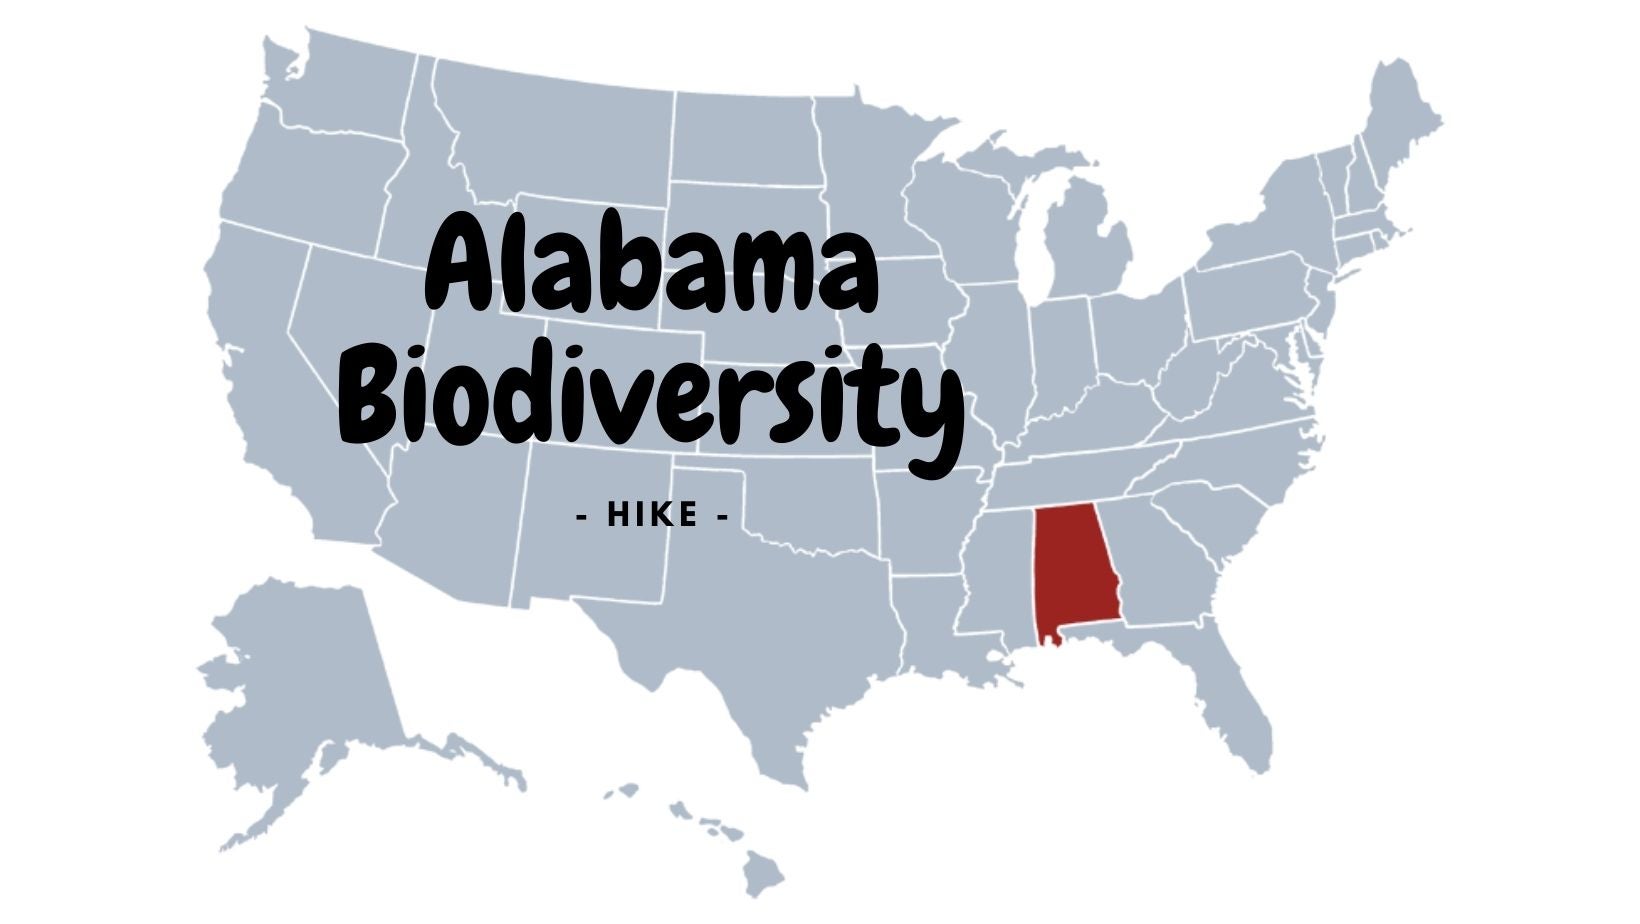 Biodiversity of Alabama